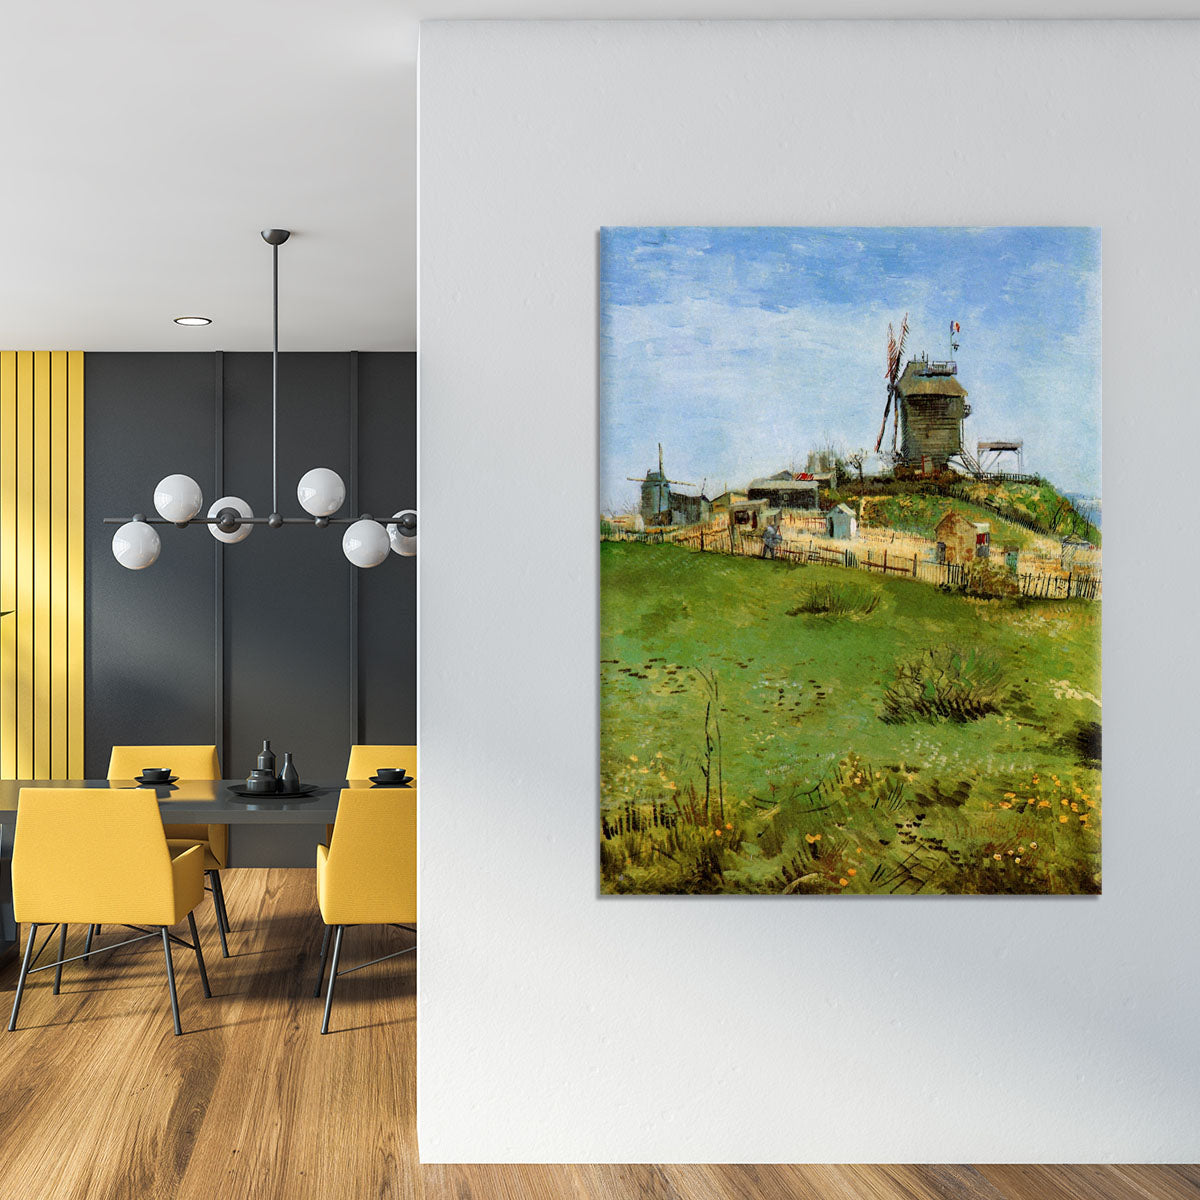 Le Moulin de la Galette 4 by Van Gogh Canvas Print or Poster - Canvas Art Rocks - 4